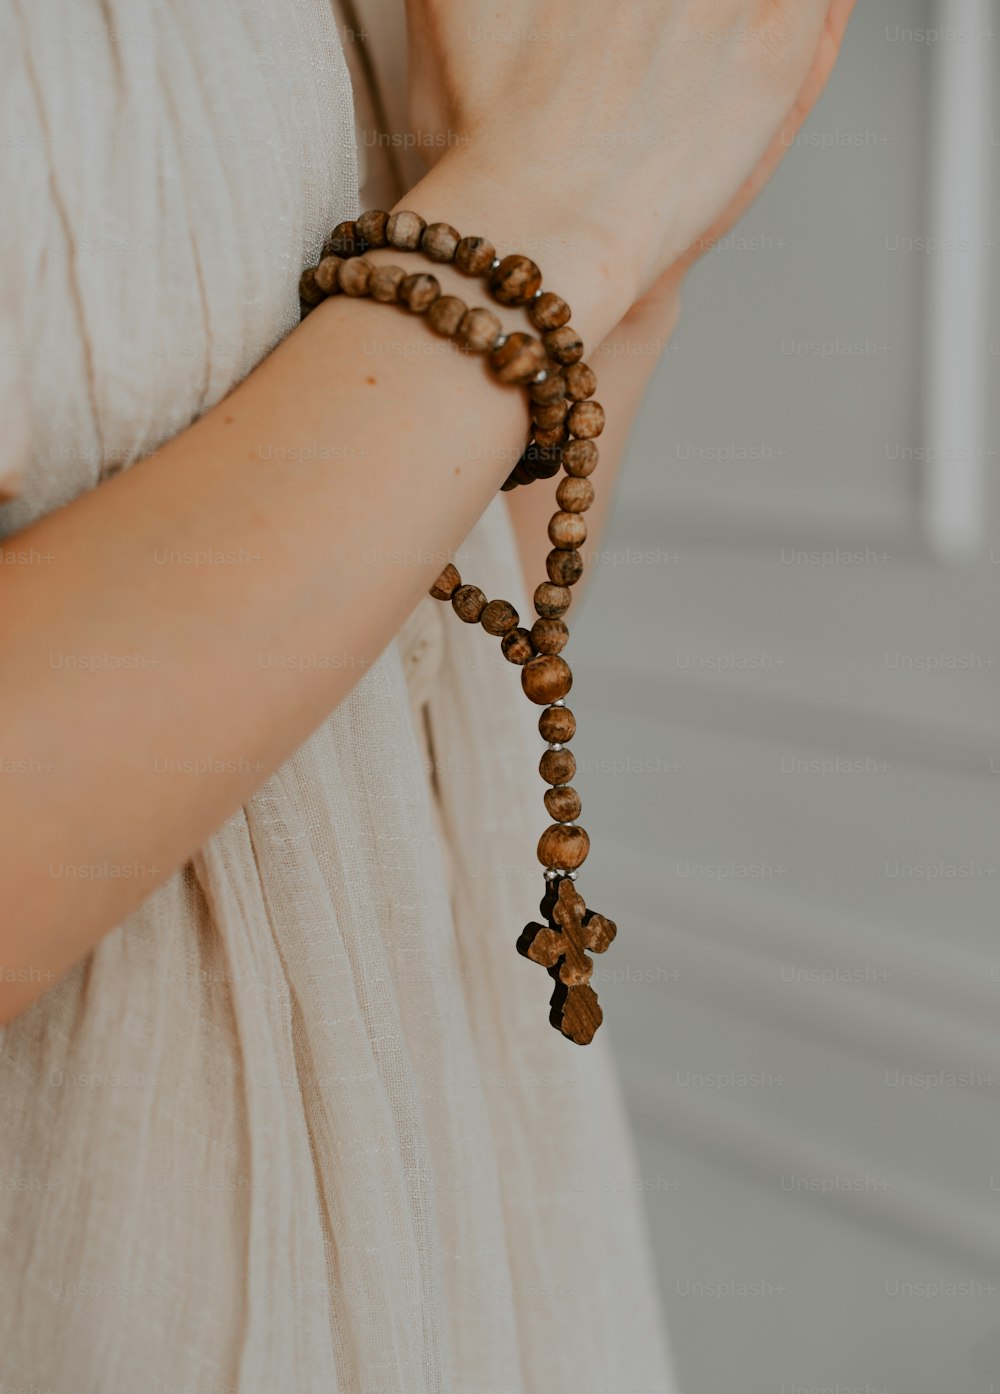 Une femme portant un bracelet en perles